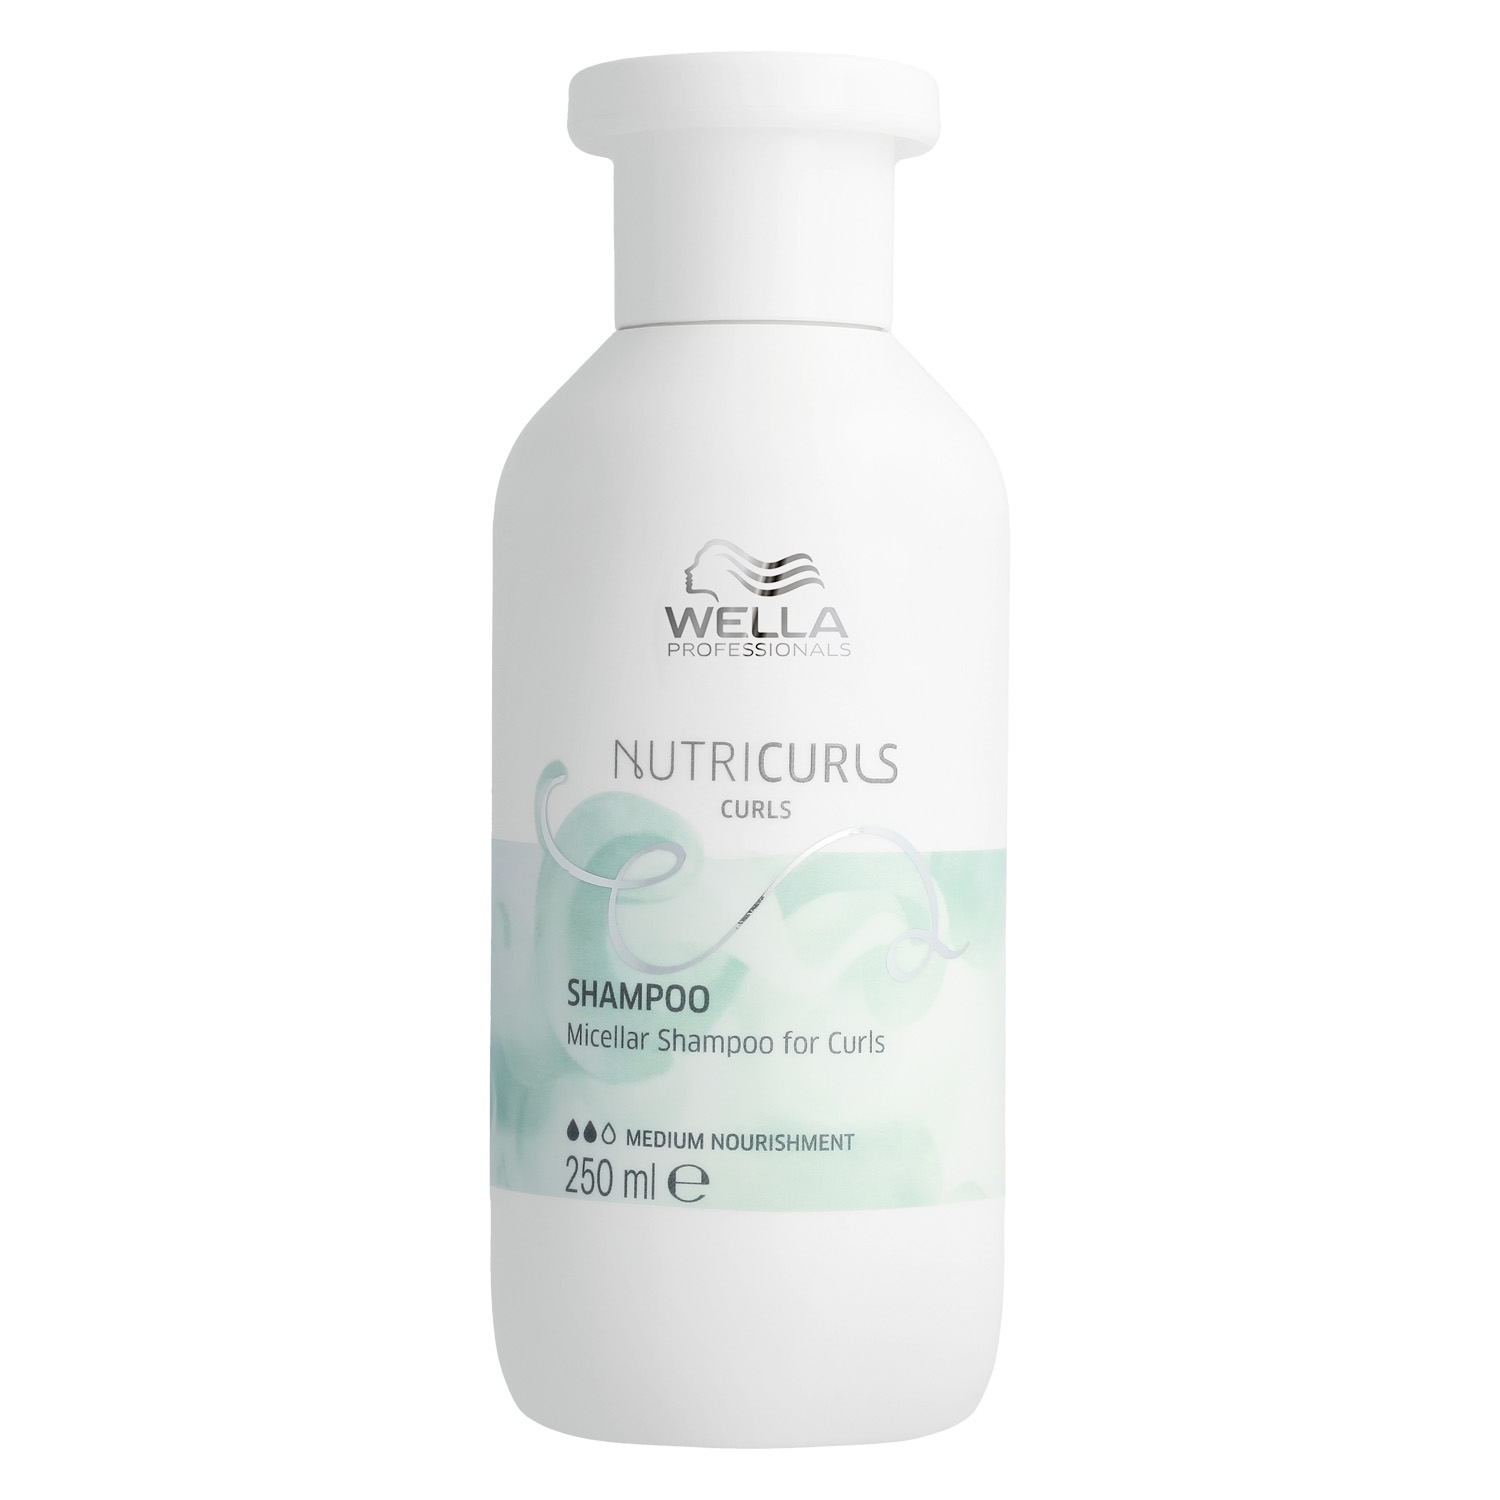 Produktbild von Nutricurls - Micellar Shampoo Waves & Curls